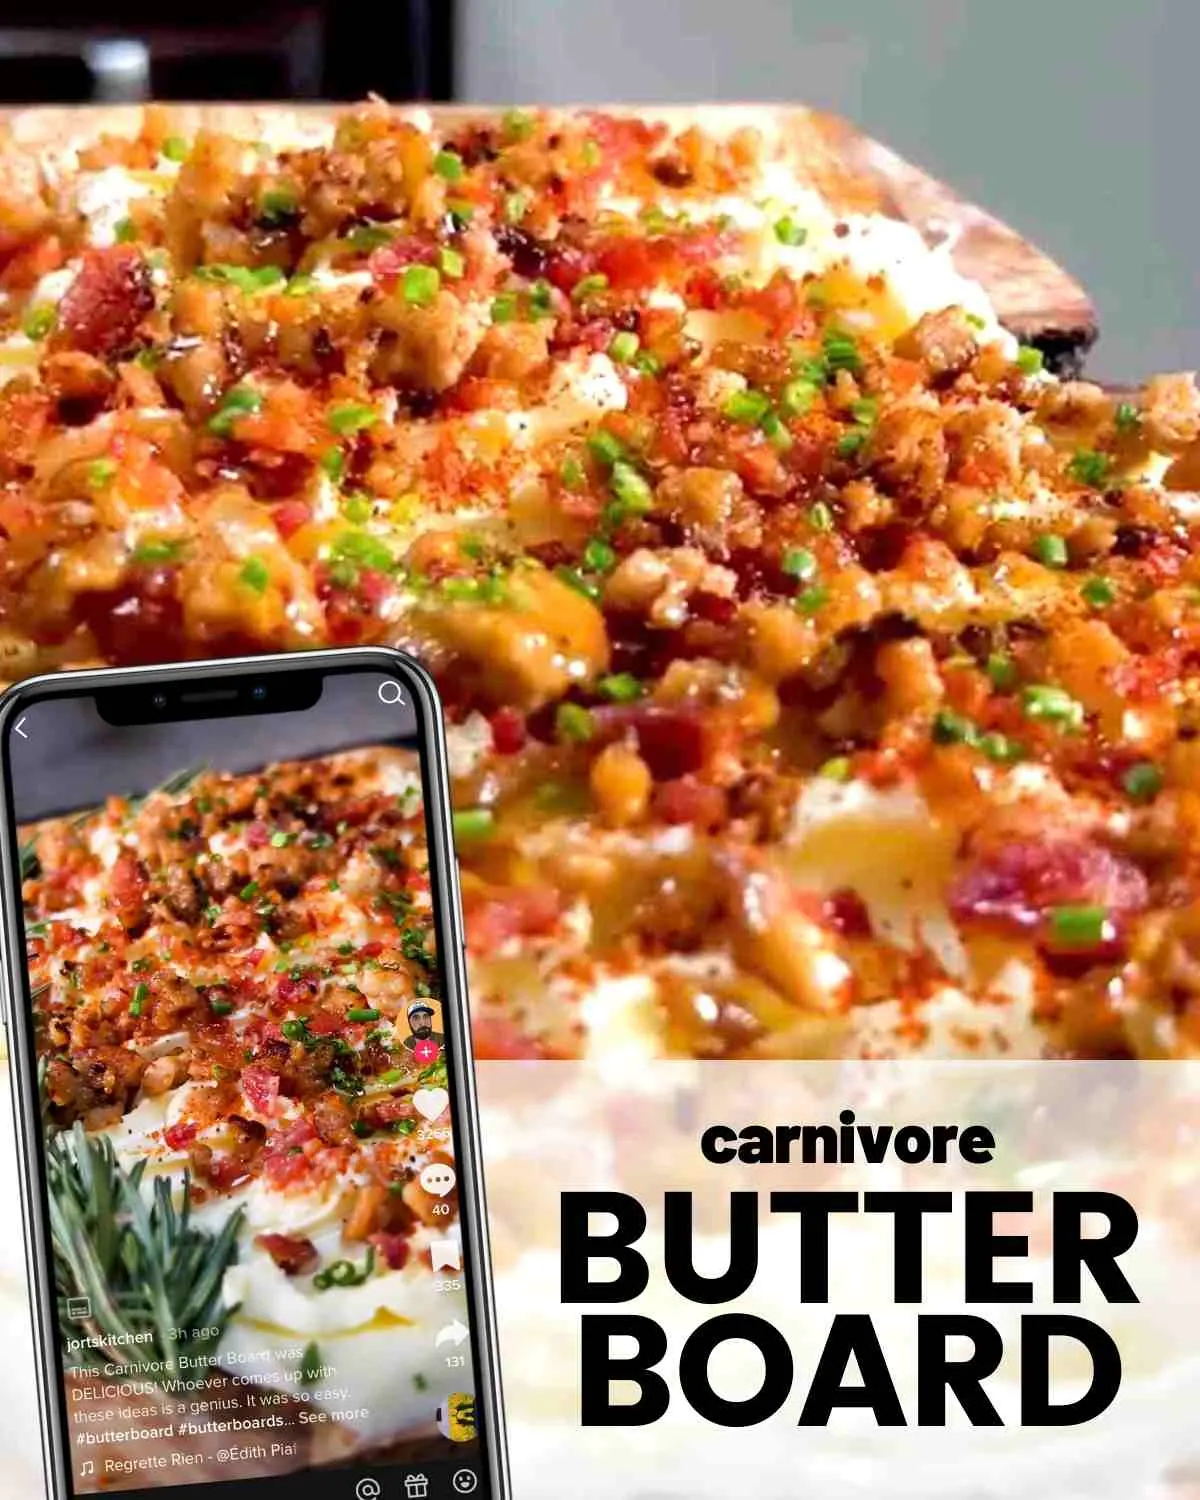 carnivore butter board recipe